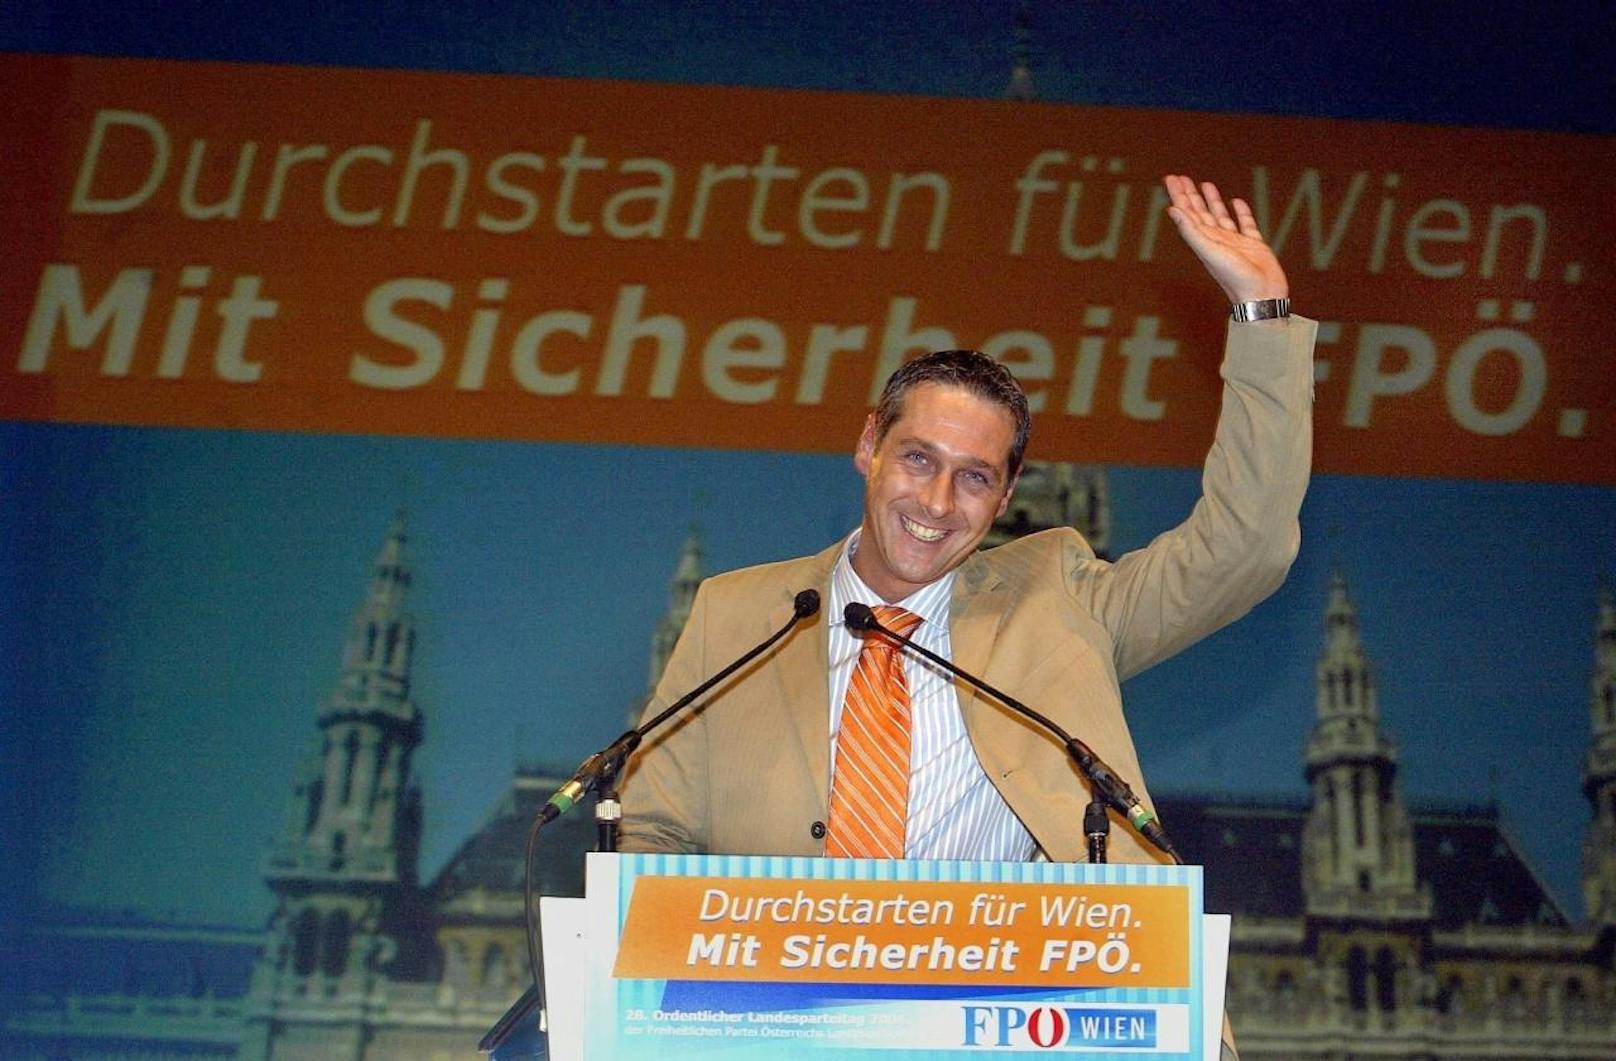 Im März 2004 wurde Heinz-Christian Strache zum Obmann der Wiener FPÖ gewählt. Zu dieser Zeit wurde über mögliche EU-Betrittsverhandlungen diskutiert. Während der Kärntner Landeshauptmann Jörg Haider die Gespräche befürwortete, sprach sich Strache gegen diese aus. Er vertrat die Position, dass die Türkei kein Teil Europas sei.